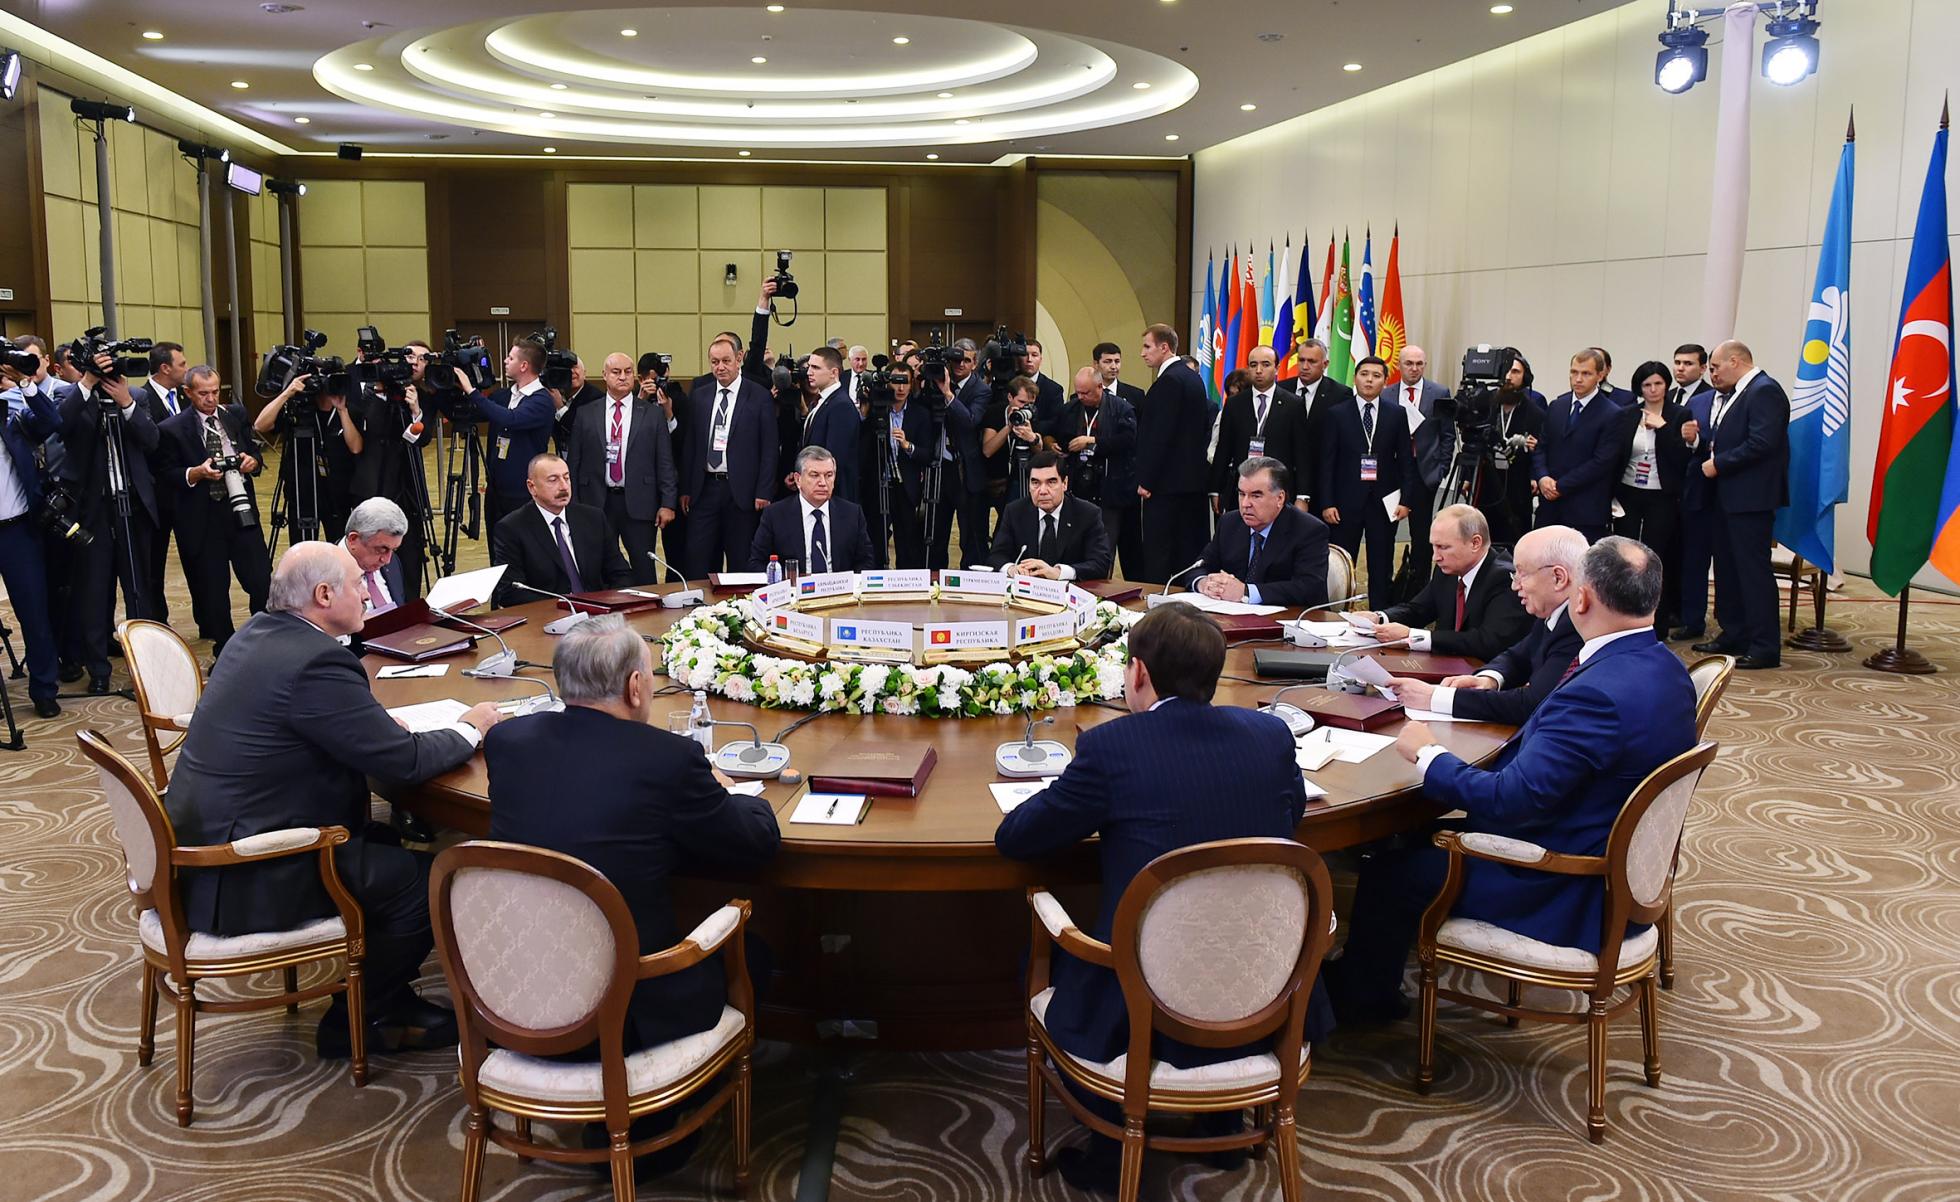 Глава саммита. Встреча государств. Переговоры между государствами. Стол переговоров с лидерами стран. Переговоры глав государств.